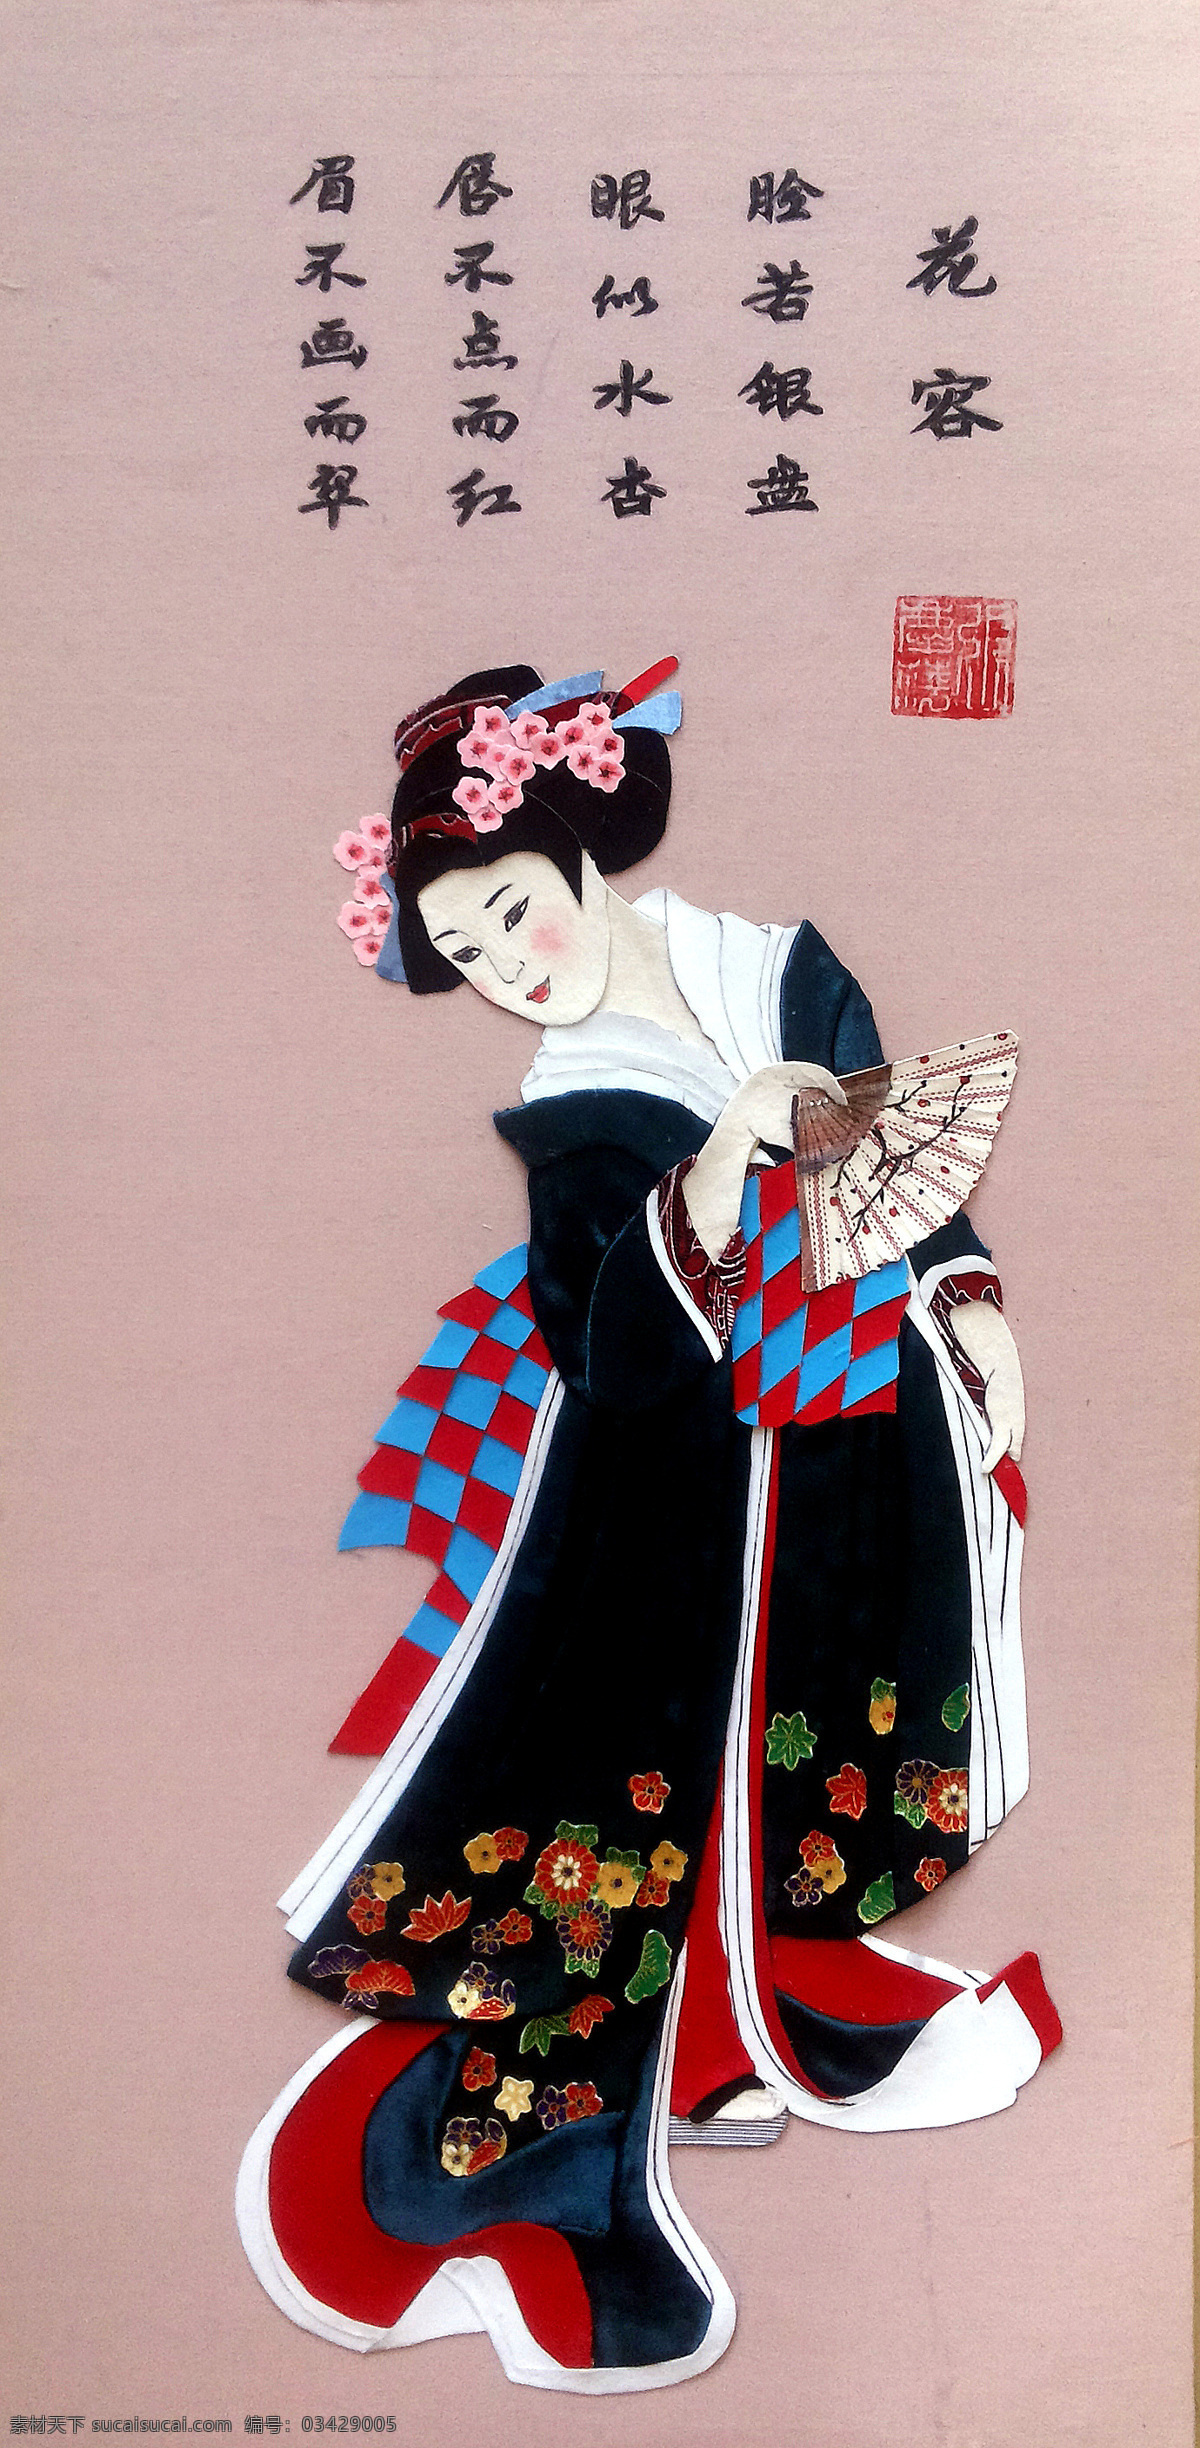 日本仕女图 日本仕女 浮世绘 人物 布贴画 美女图 古代仕女 插画 立体画 文化艺术 传统文化